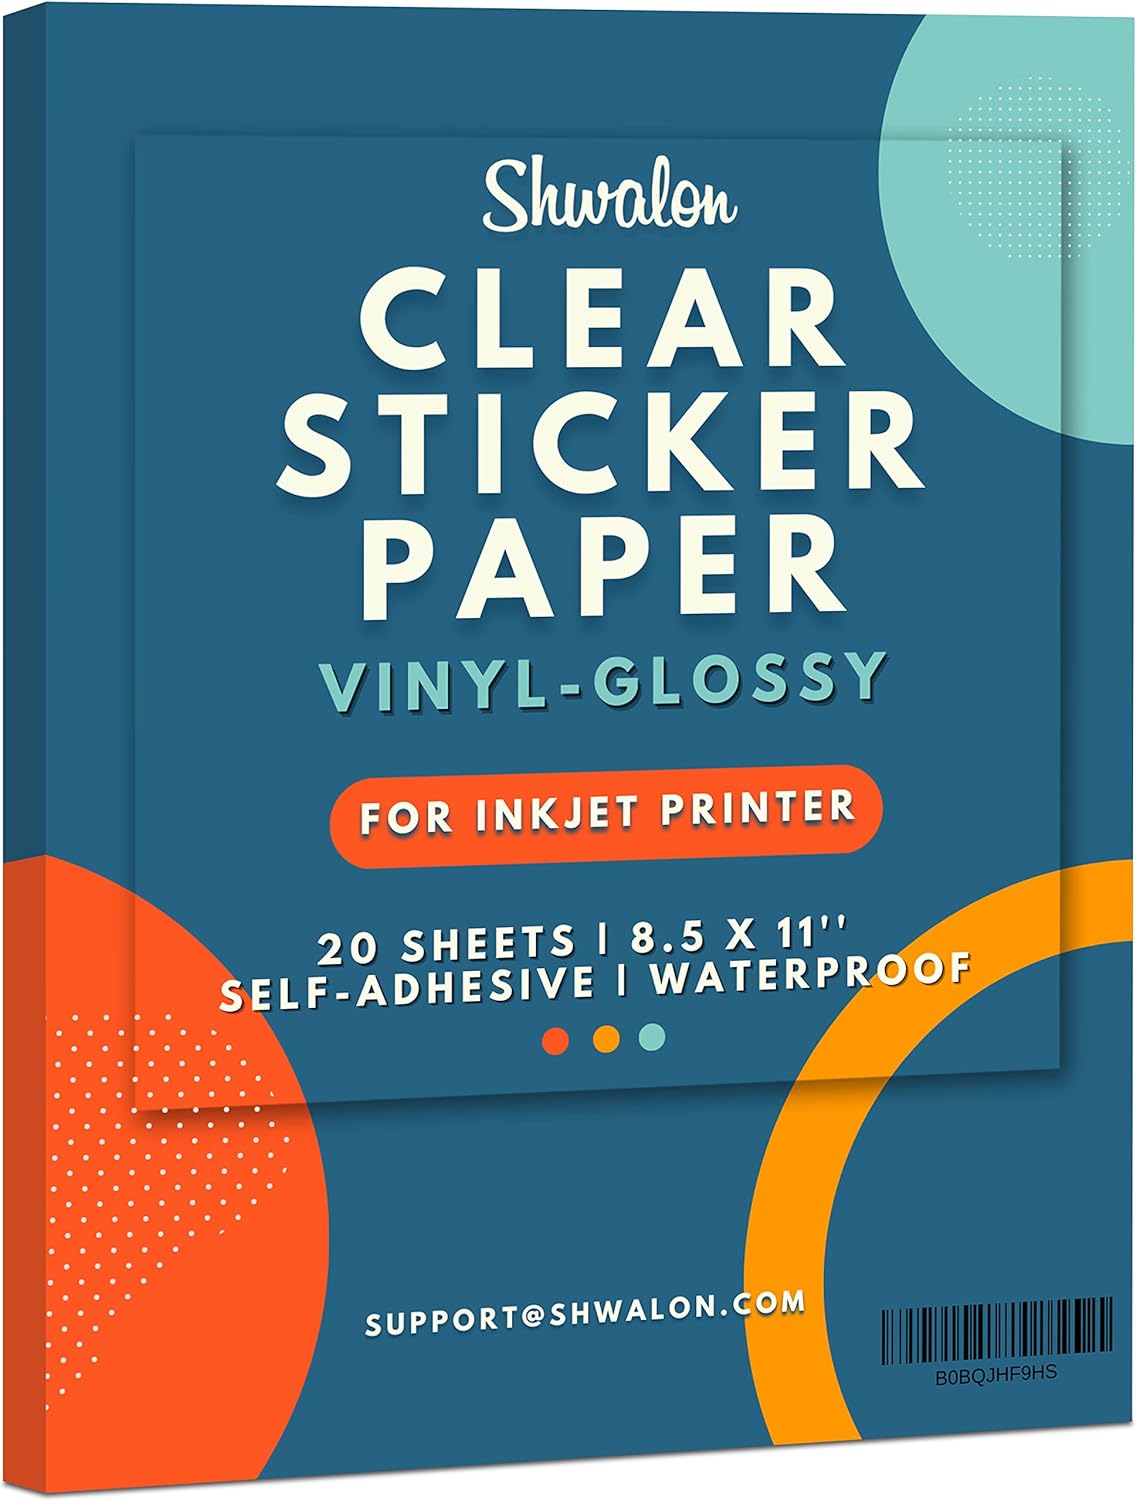 MECOLOUR Premium Printable Vinyl Sticker Paper for Cricut